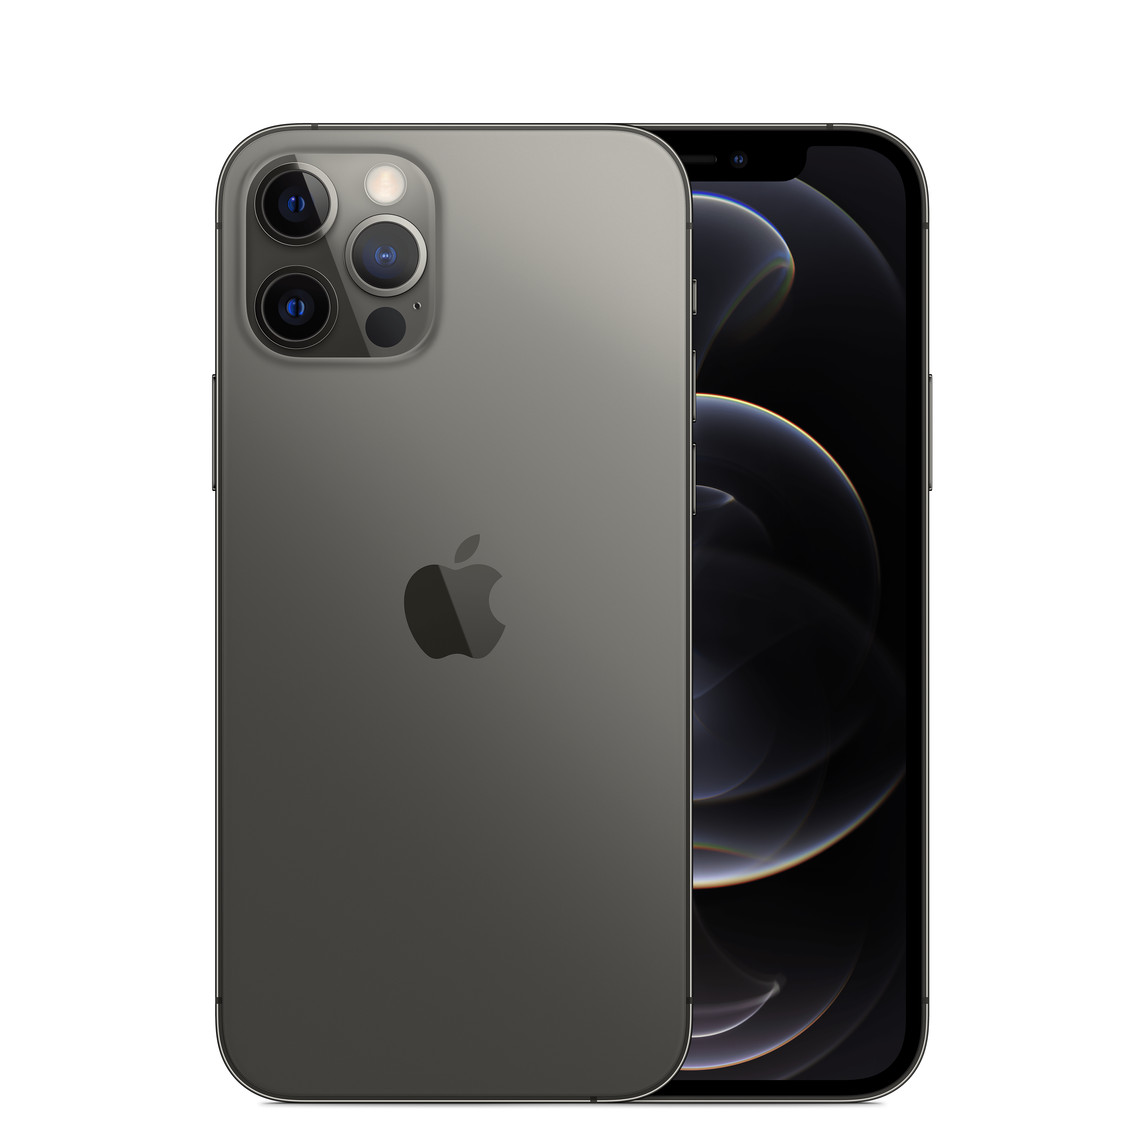 iPhone 12 in Graphit, Zwei-Kamera-System mit True Tone Blitz, Apple Logo in der Mitte, Vorderseite, All-Screen Display